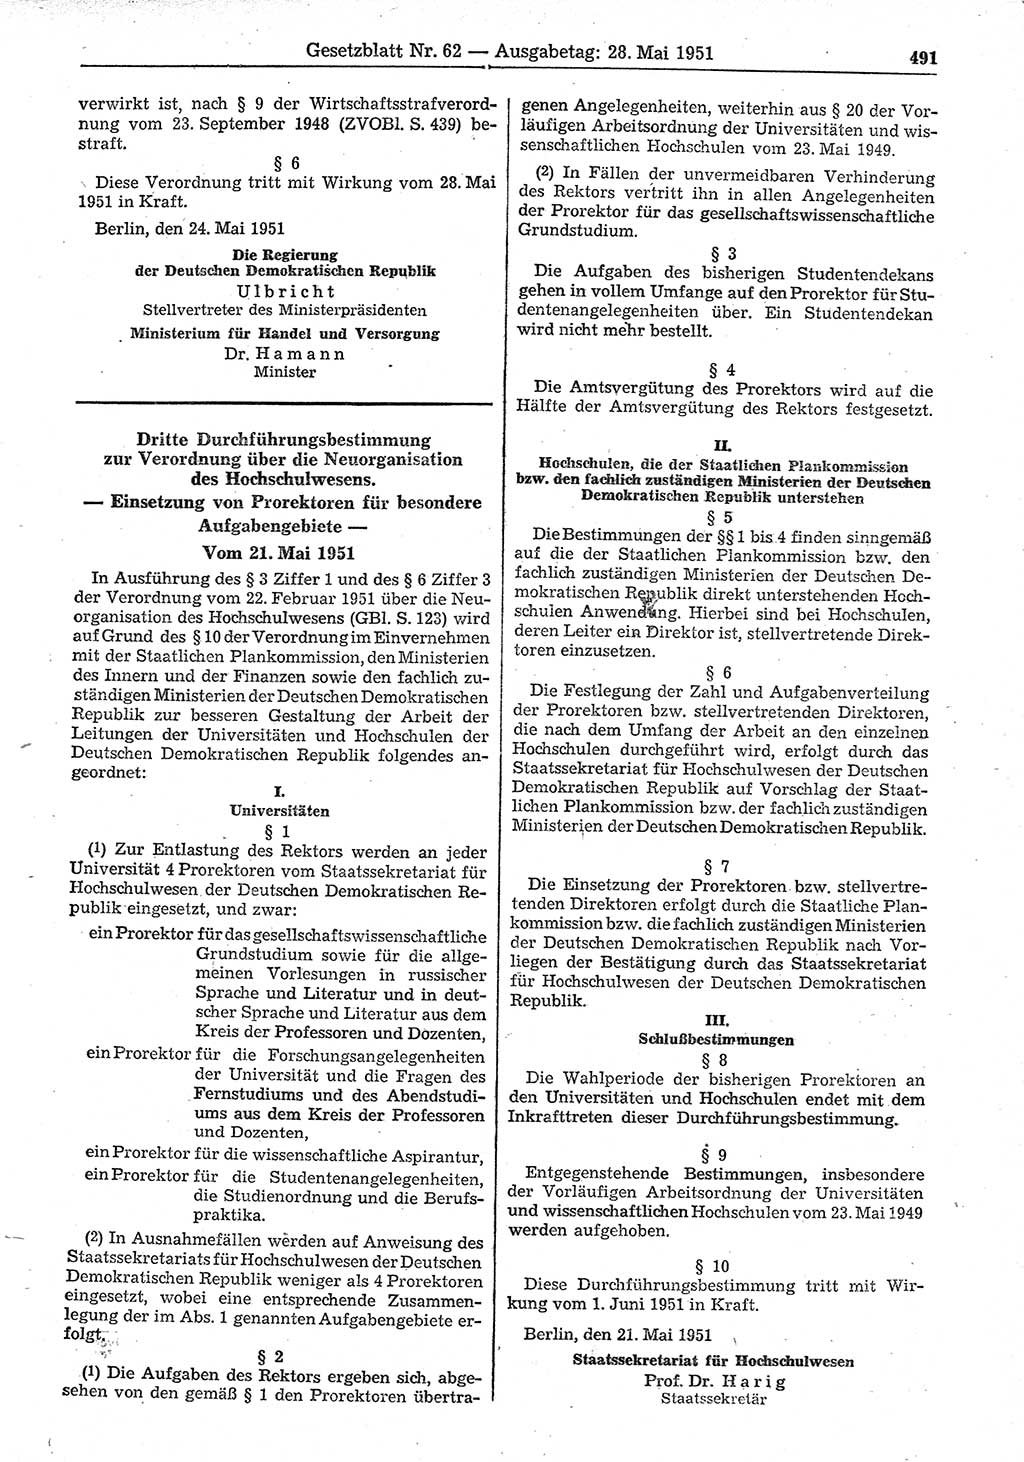 Gesetzblatt (GBl.) der Deutschen Demokratischen Republik (DDR) 1951, Seite 491 (GBl. DDR 1951, S. 491)